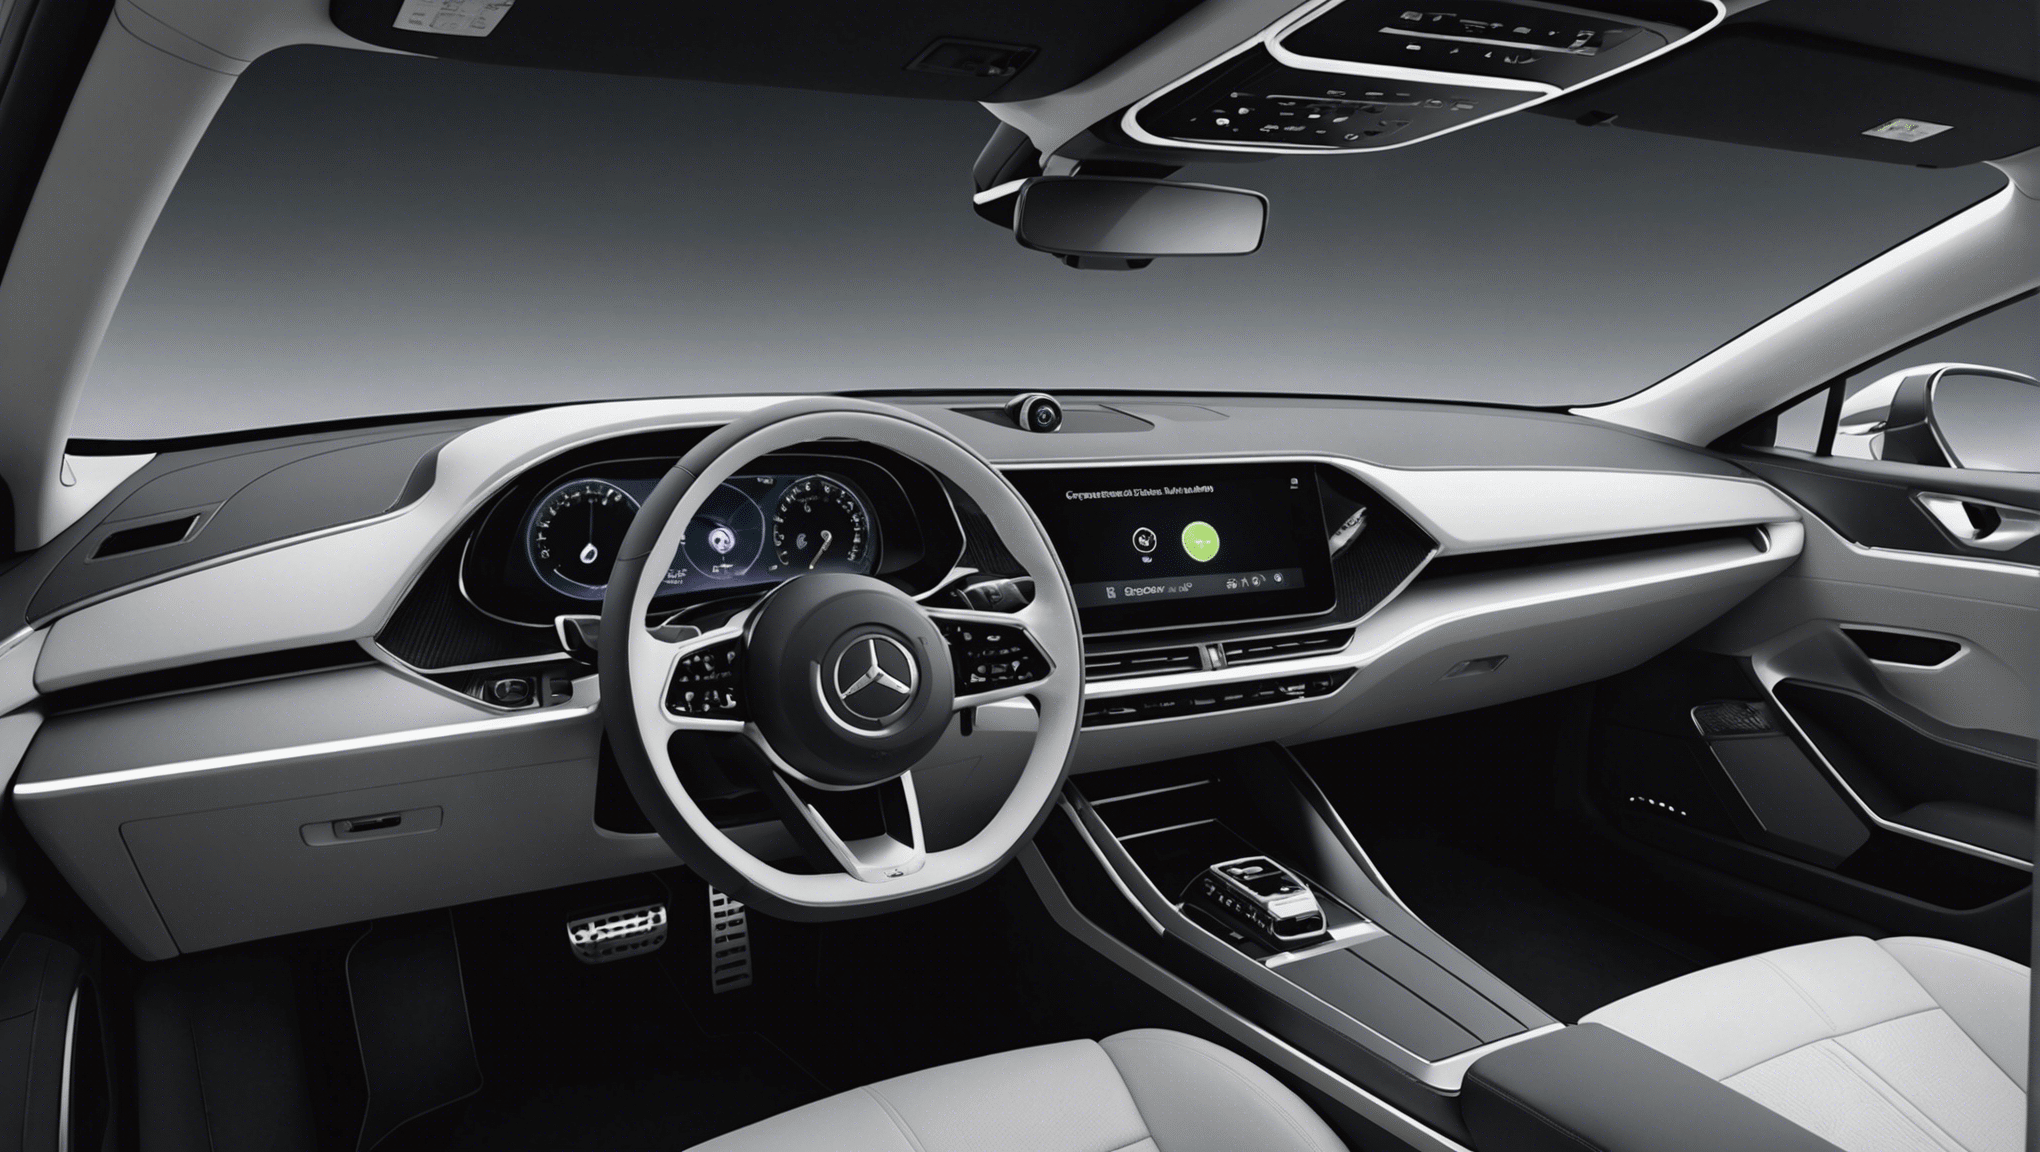 découvrez à quoi ressembleront les designs intérieurs des voitures du futur et plongez dans l'innovation avec des concepts avant-gardistes de confort et de technologie.